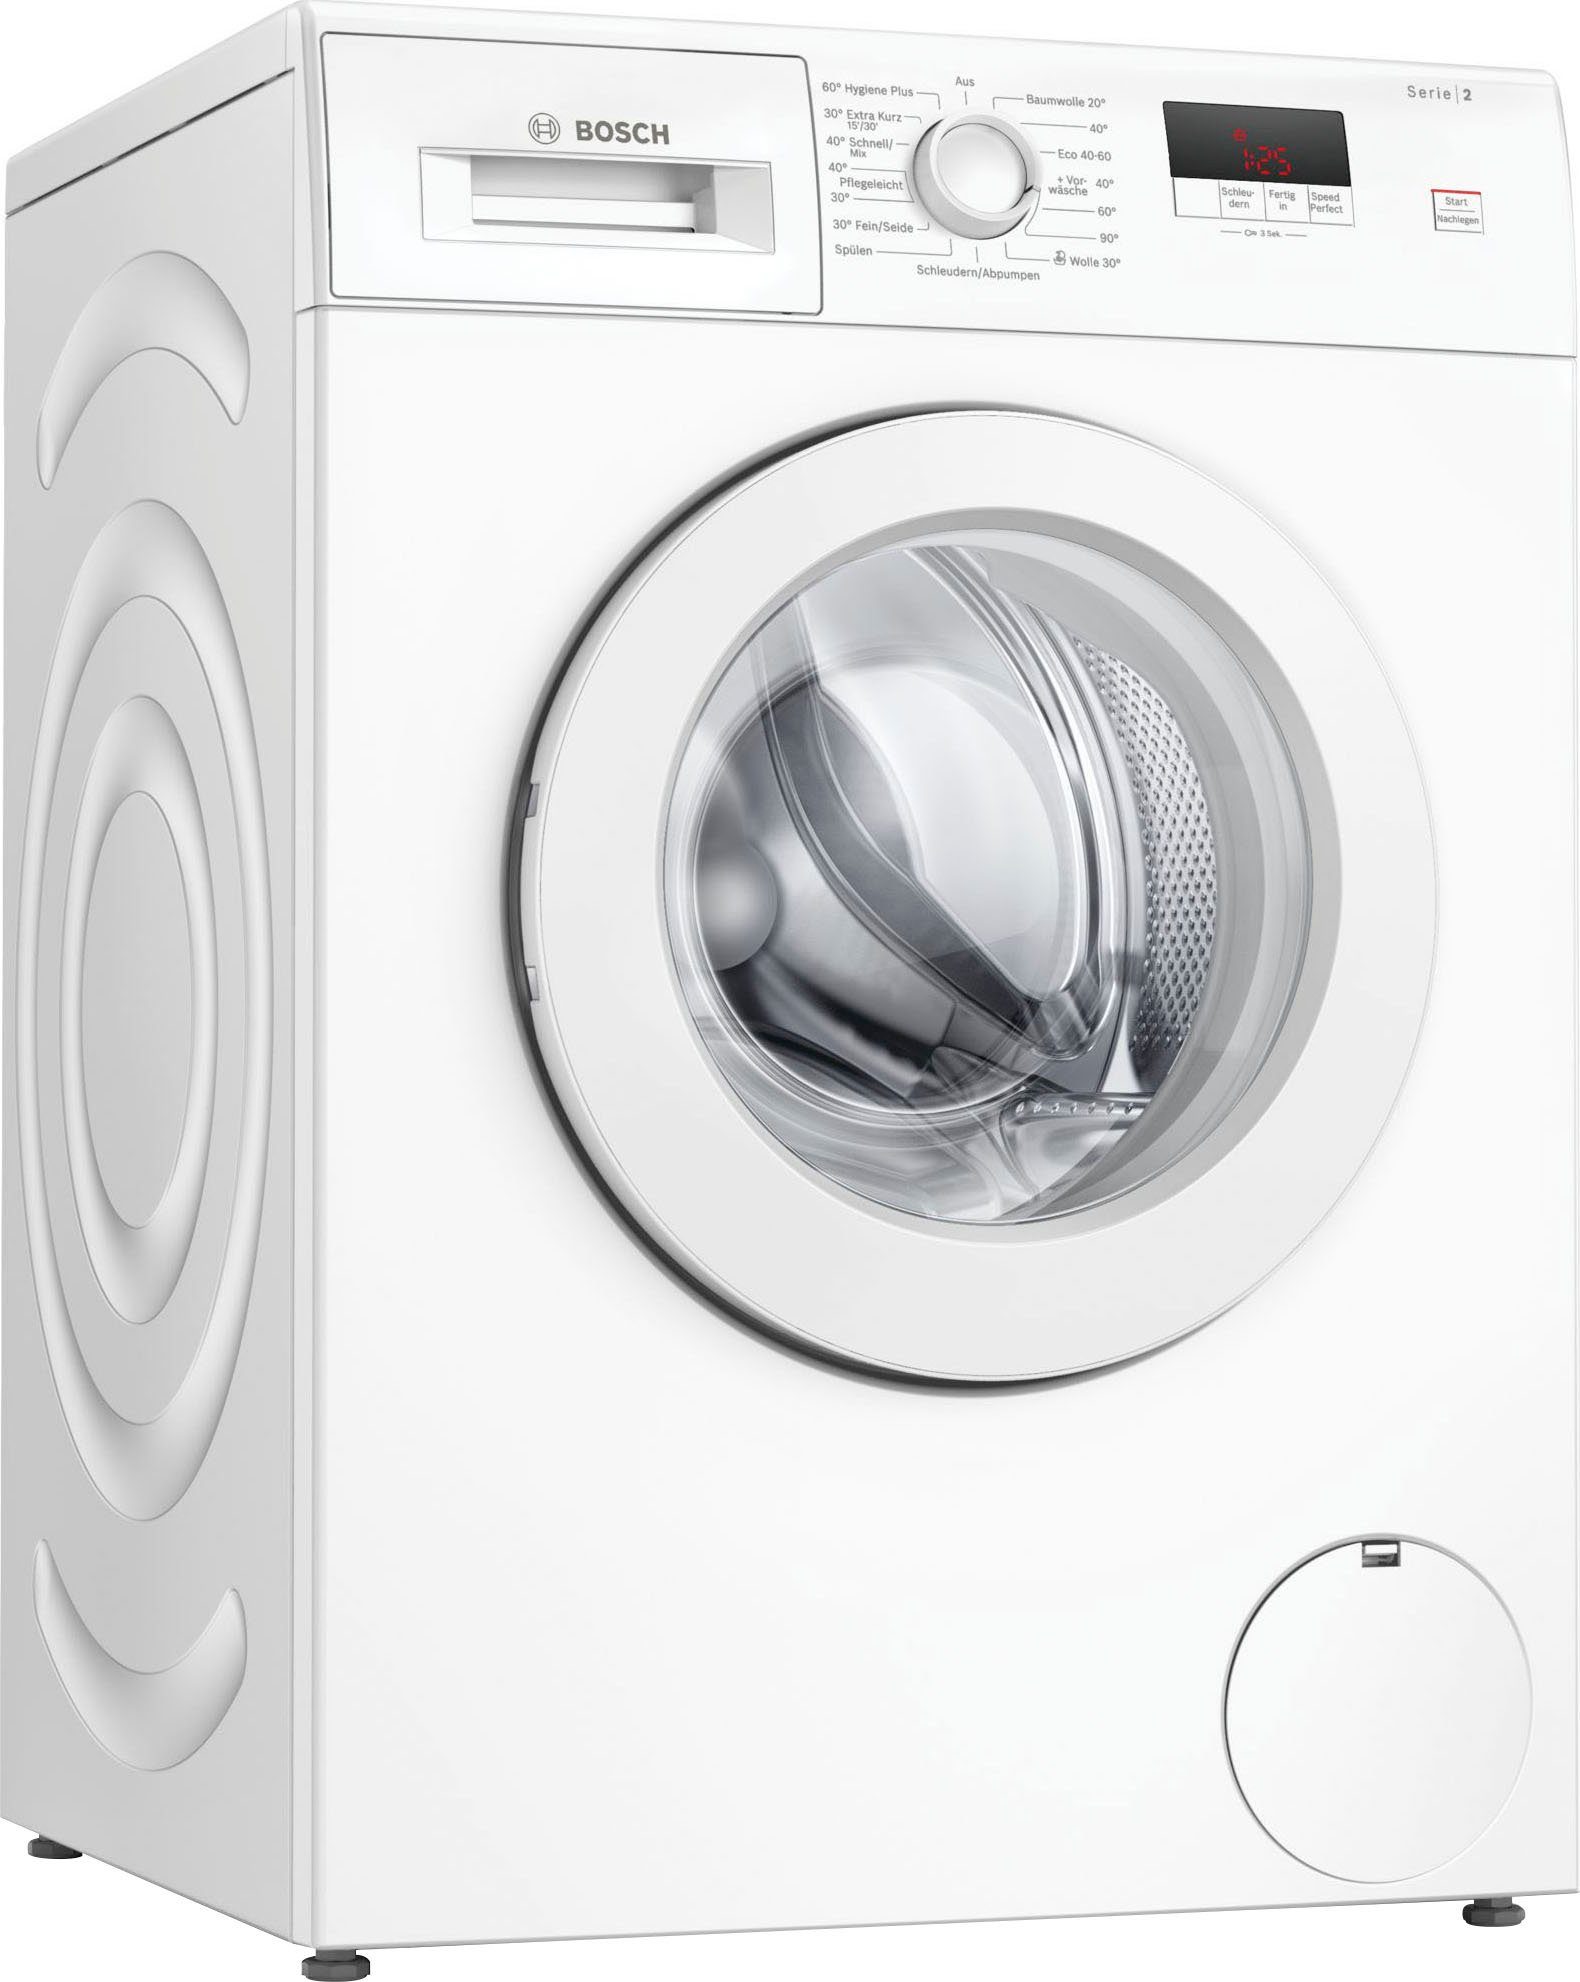 BOSCH Waschmaschine Serie 2 WAJ24061, 7 kg, 1200 U/min, Eco Silence Drive™:  so effizient und robust muss ein Waschmaschinenantrieb sein.